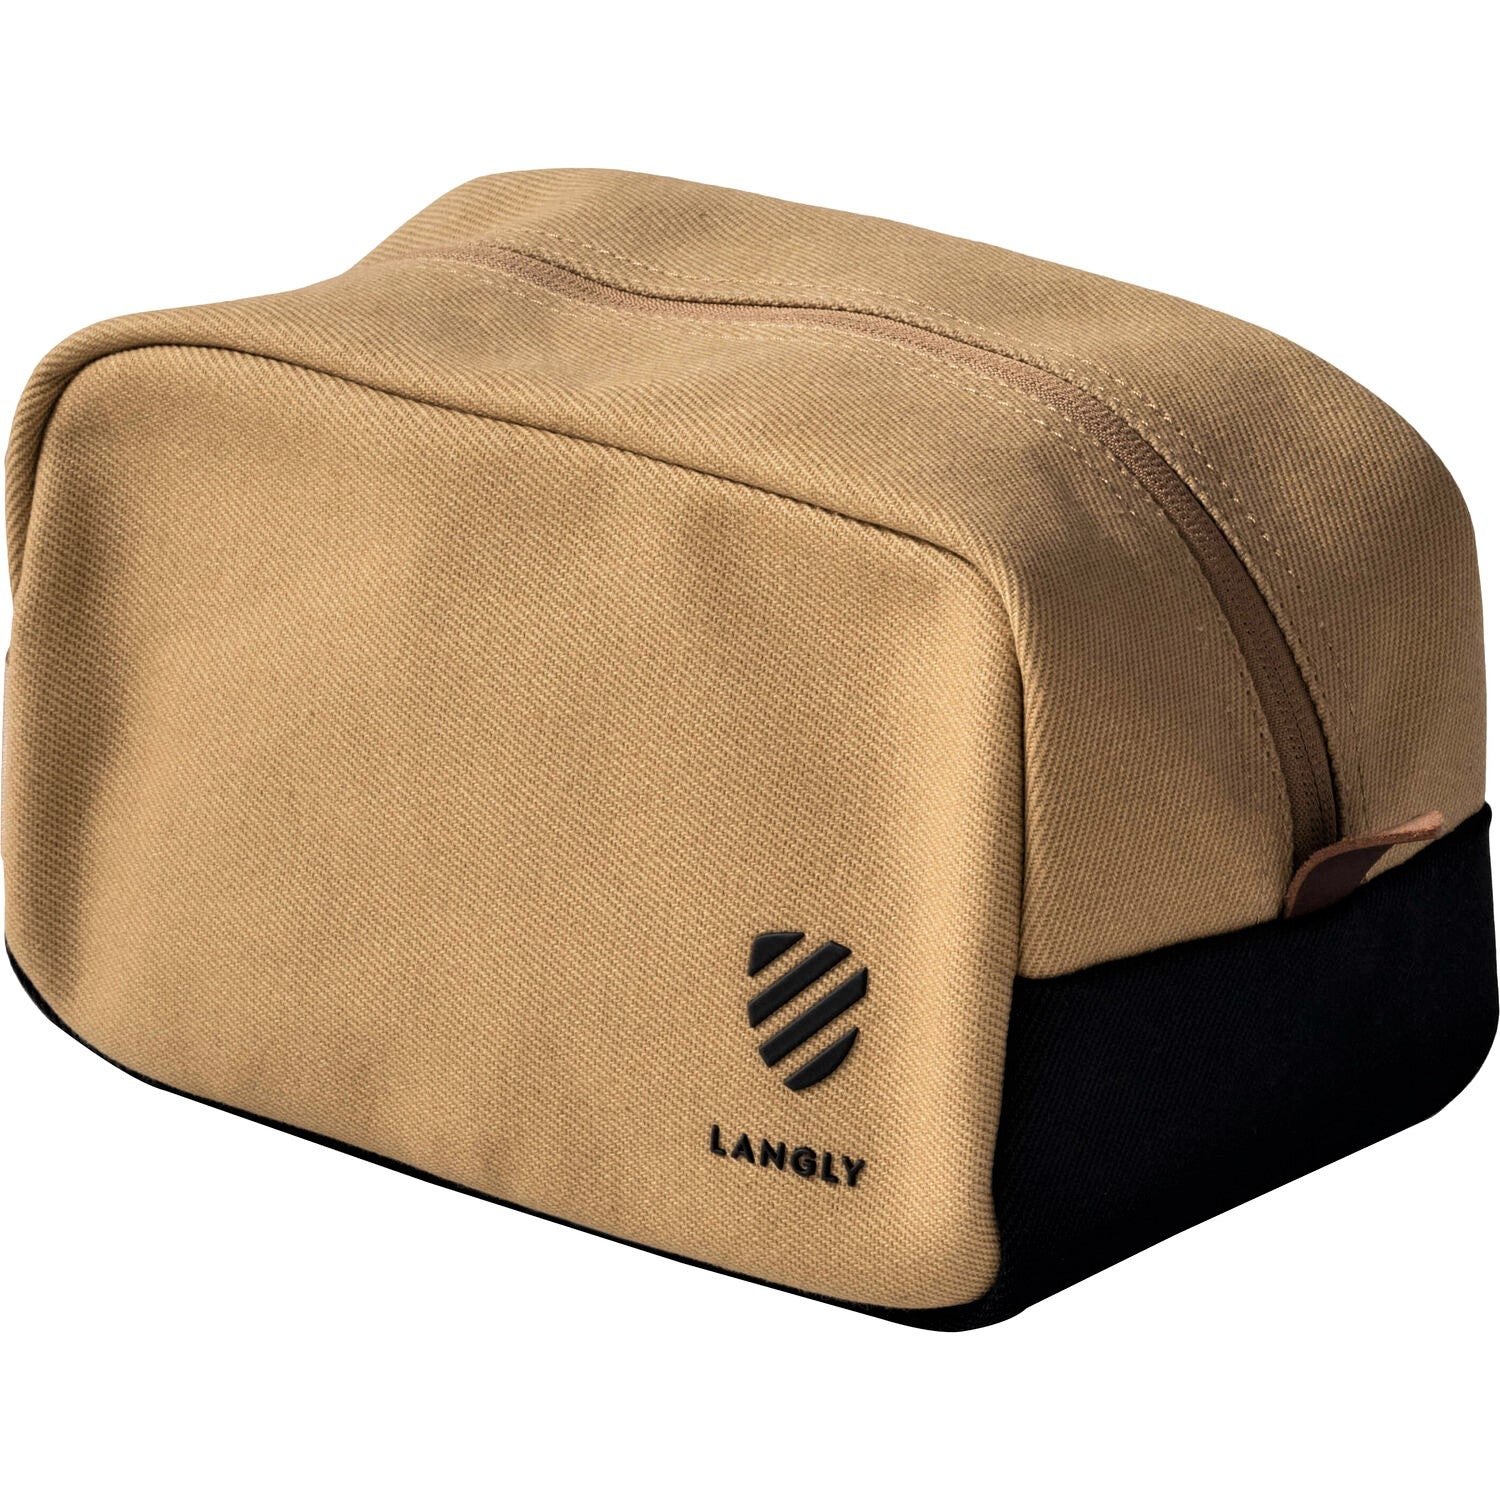 Langly Weekender Kit Bag (Sand)